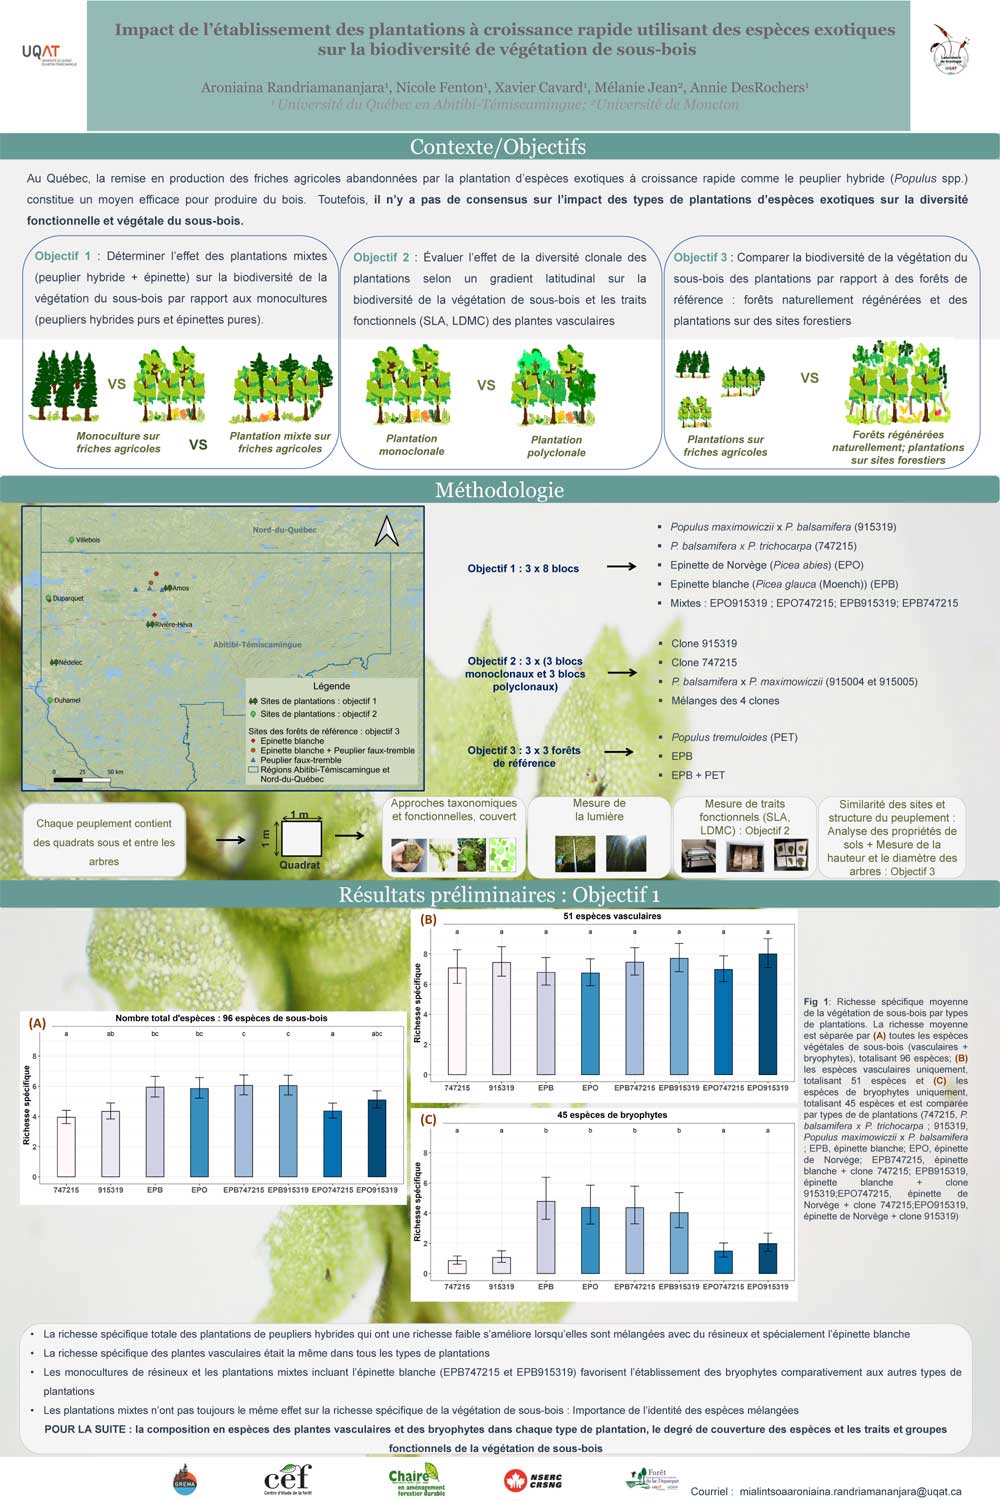 Impact de l'établissement des plantations à croissance rapide utilisant des espèces exotiques sur la biodiversité de la végétation de sous-bois